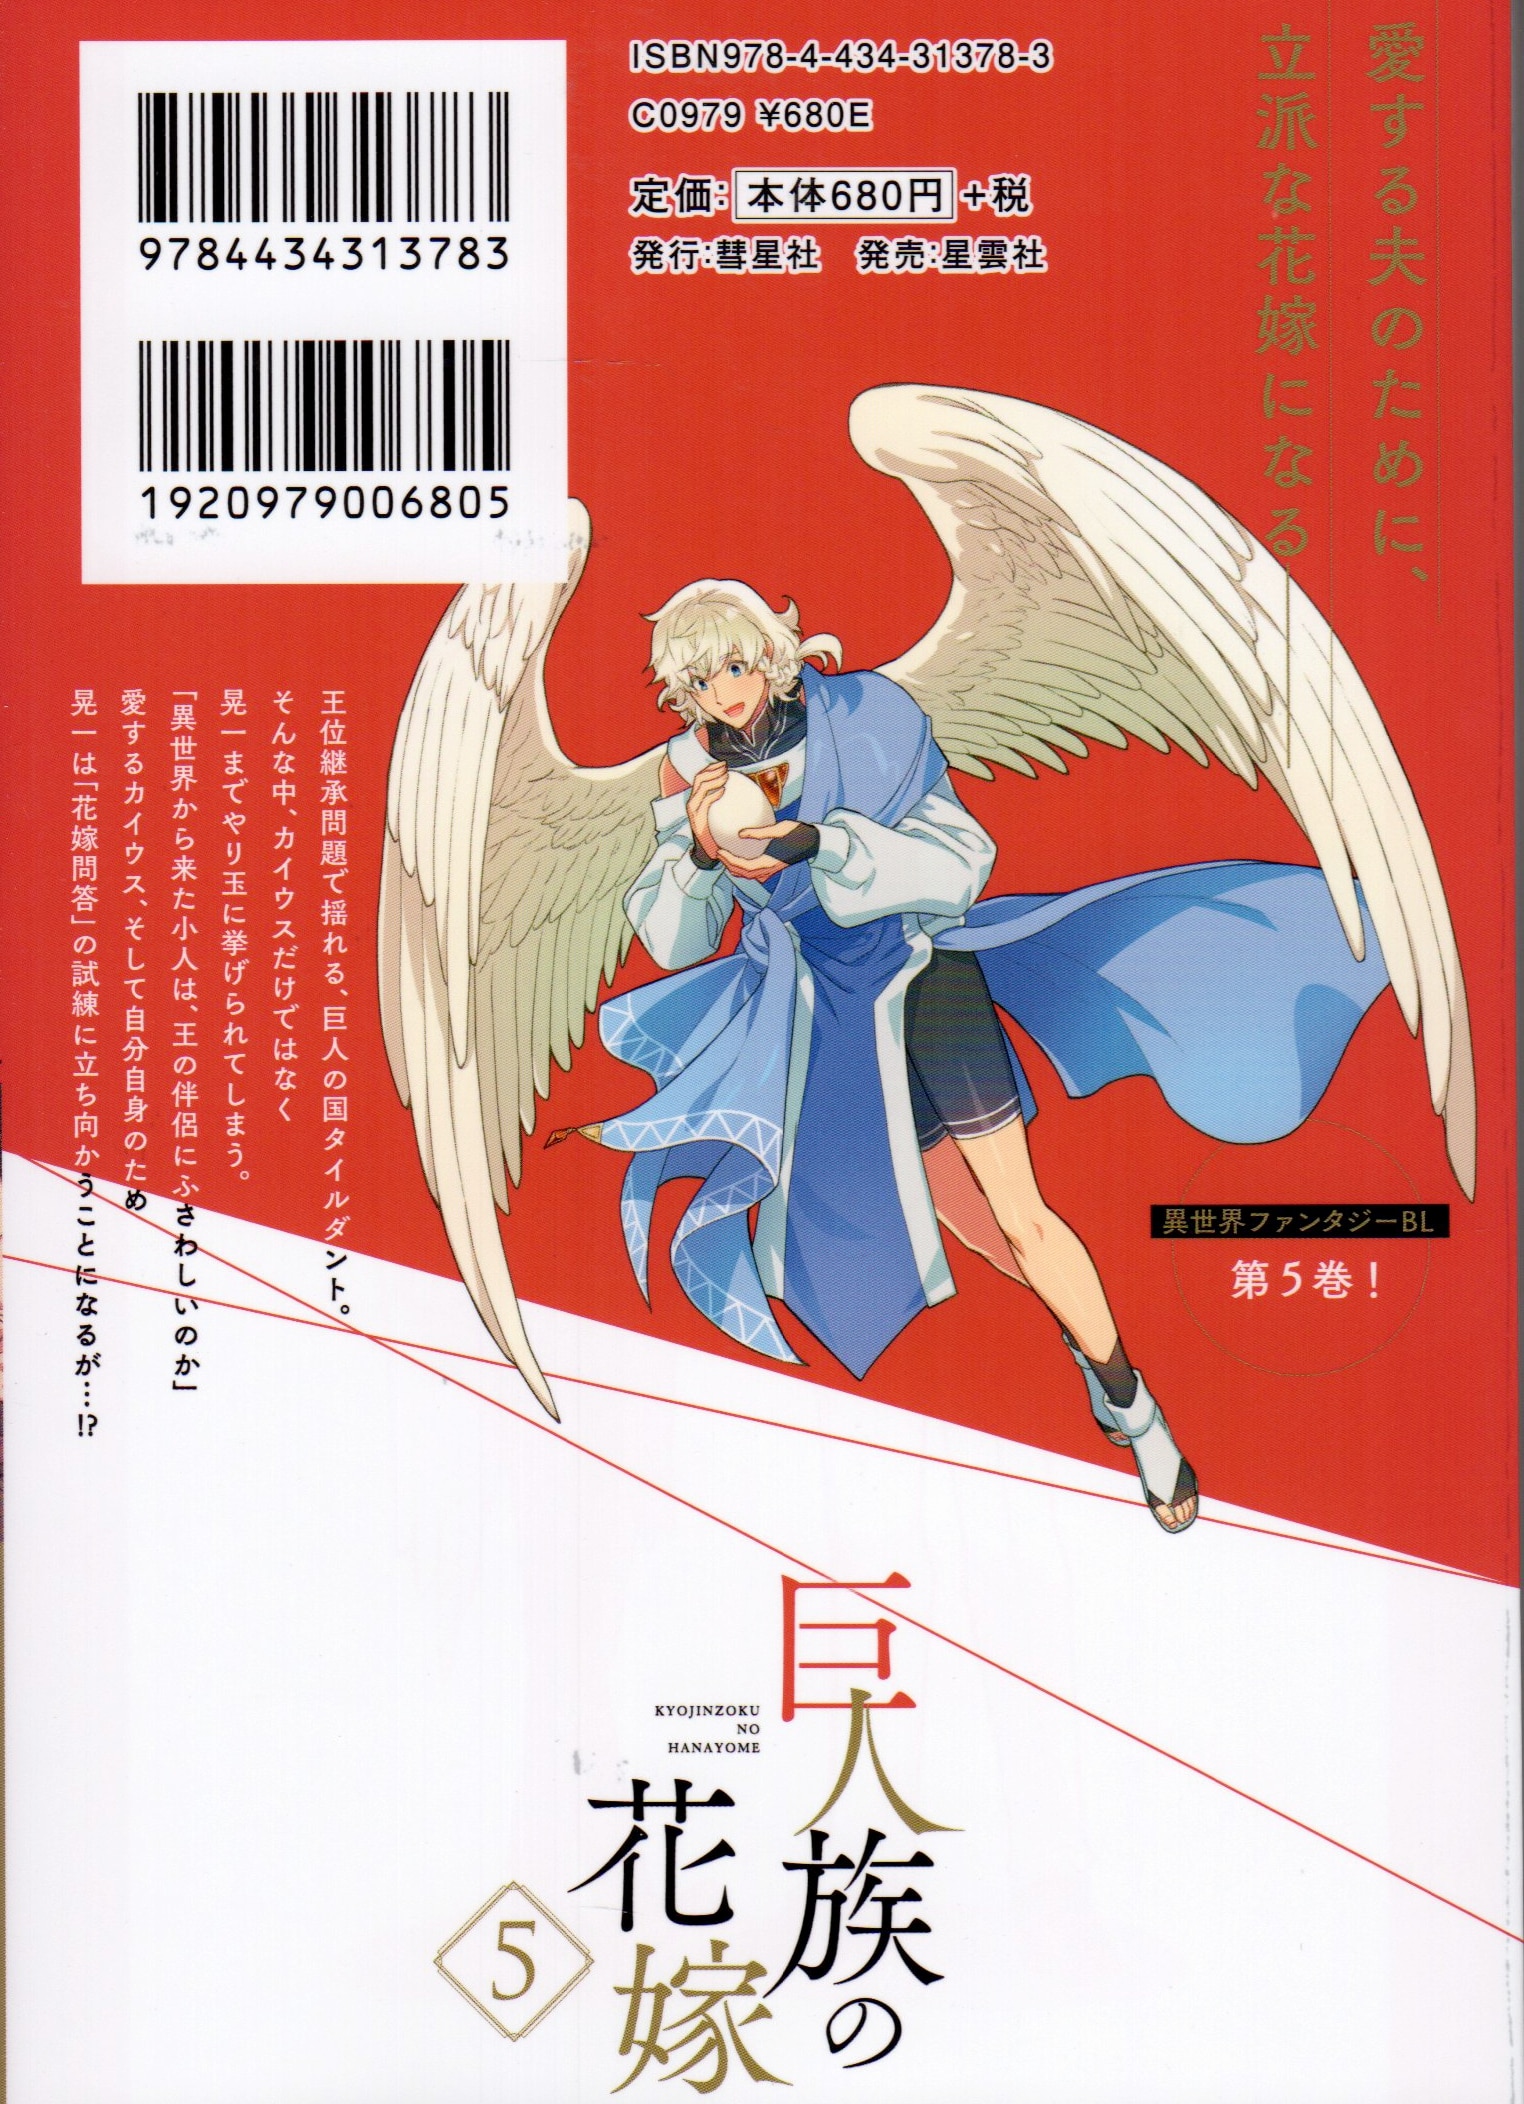 Kyojinzoku no Hanayome 3 [w/ Booklet, Special Edition] (Glanz BL comics)